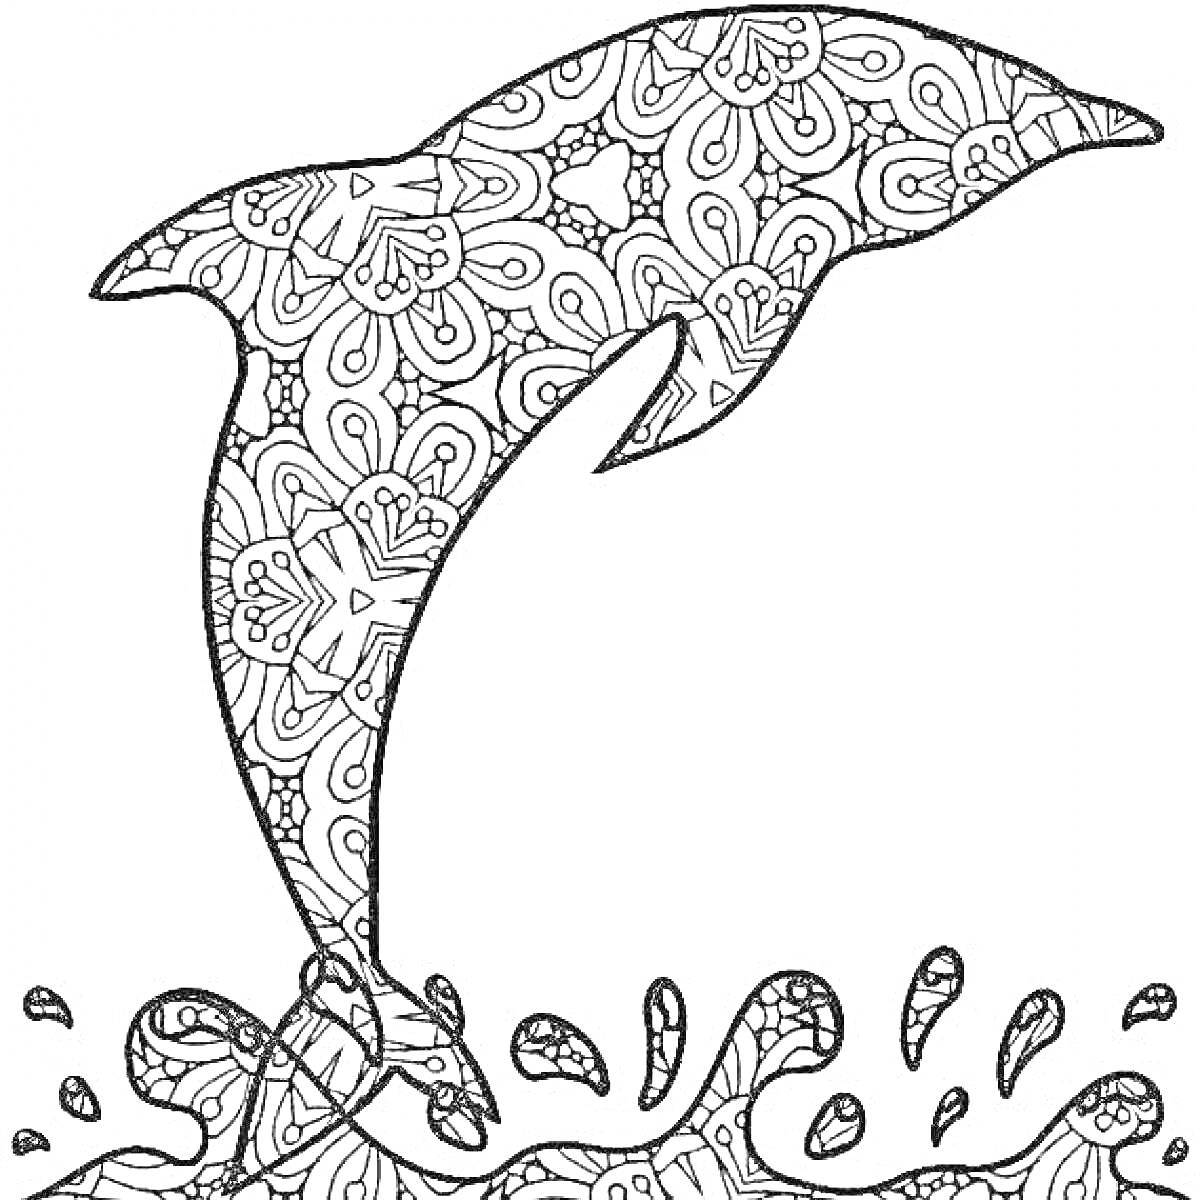 Раскраска Дельфин над водой с узором и брызгами